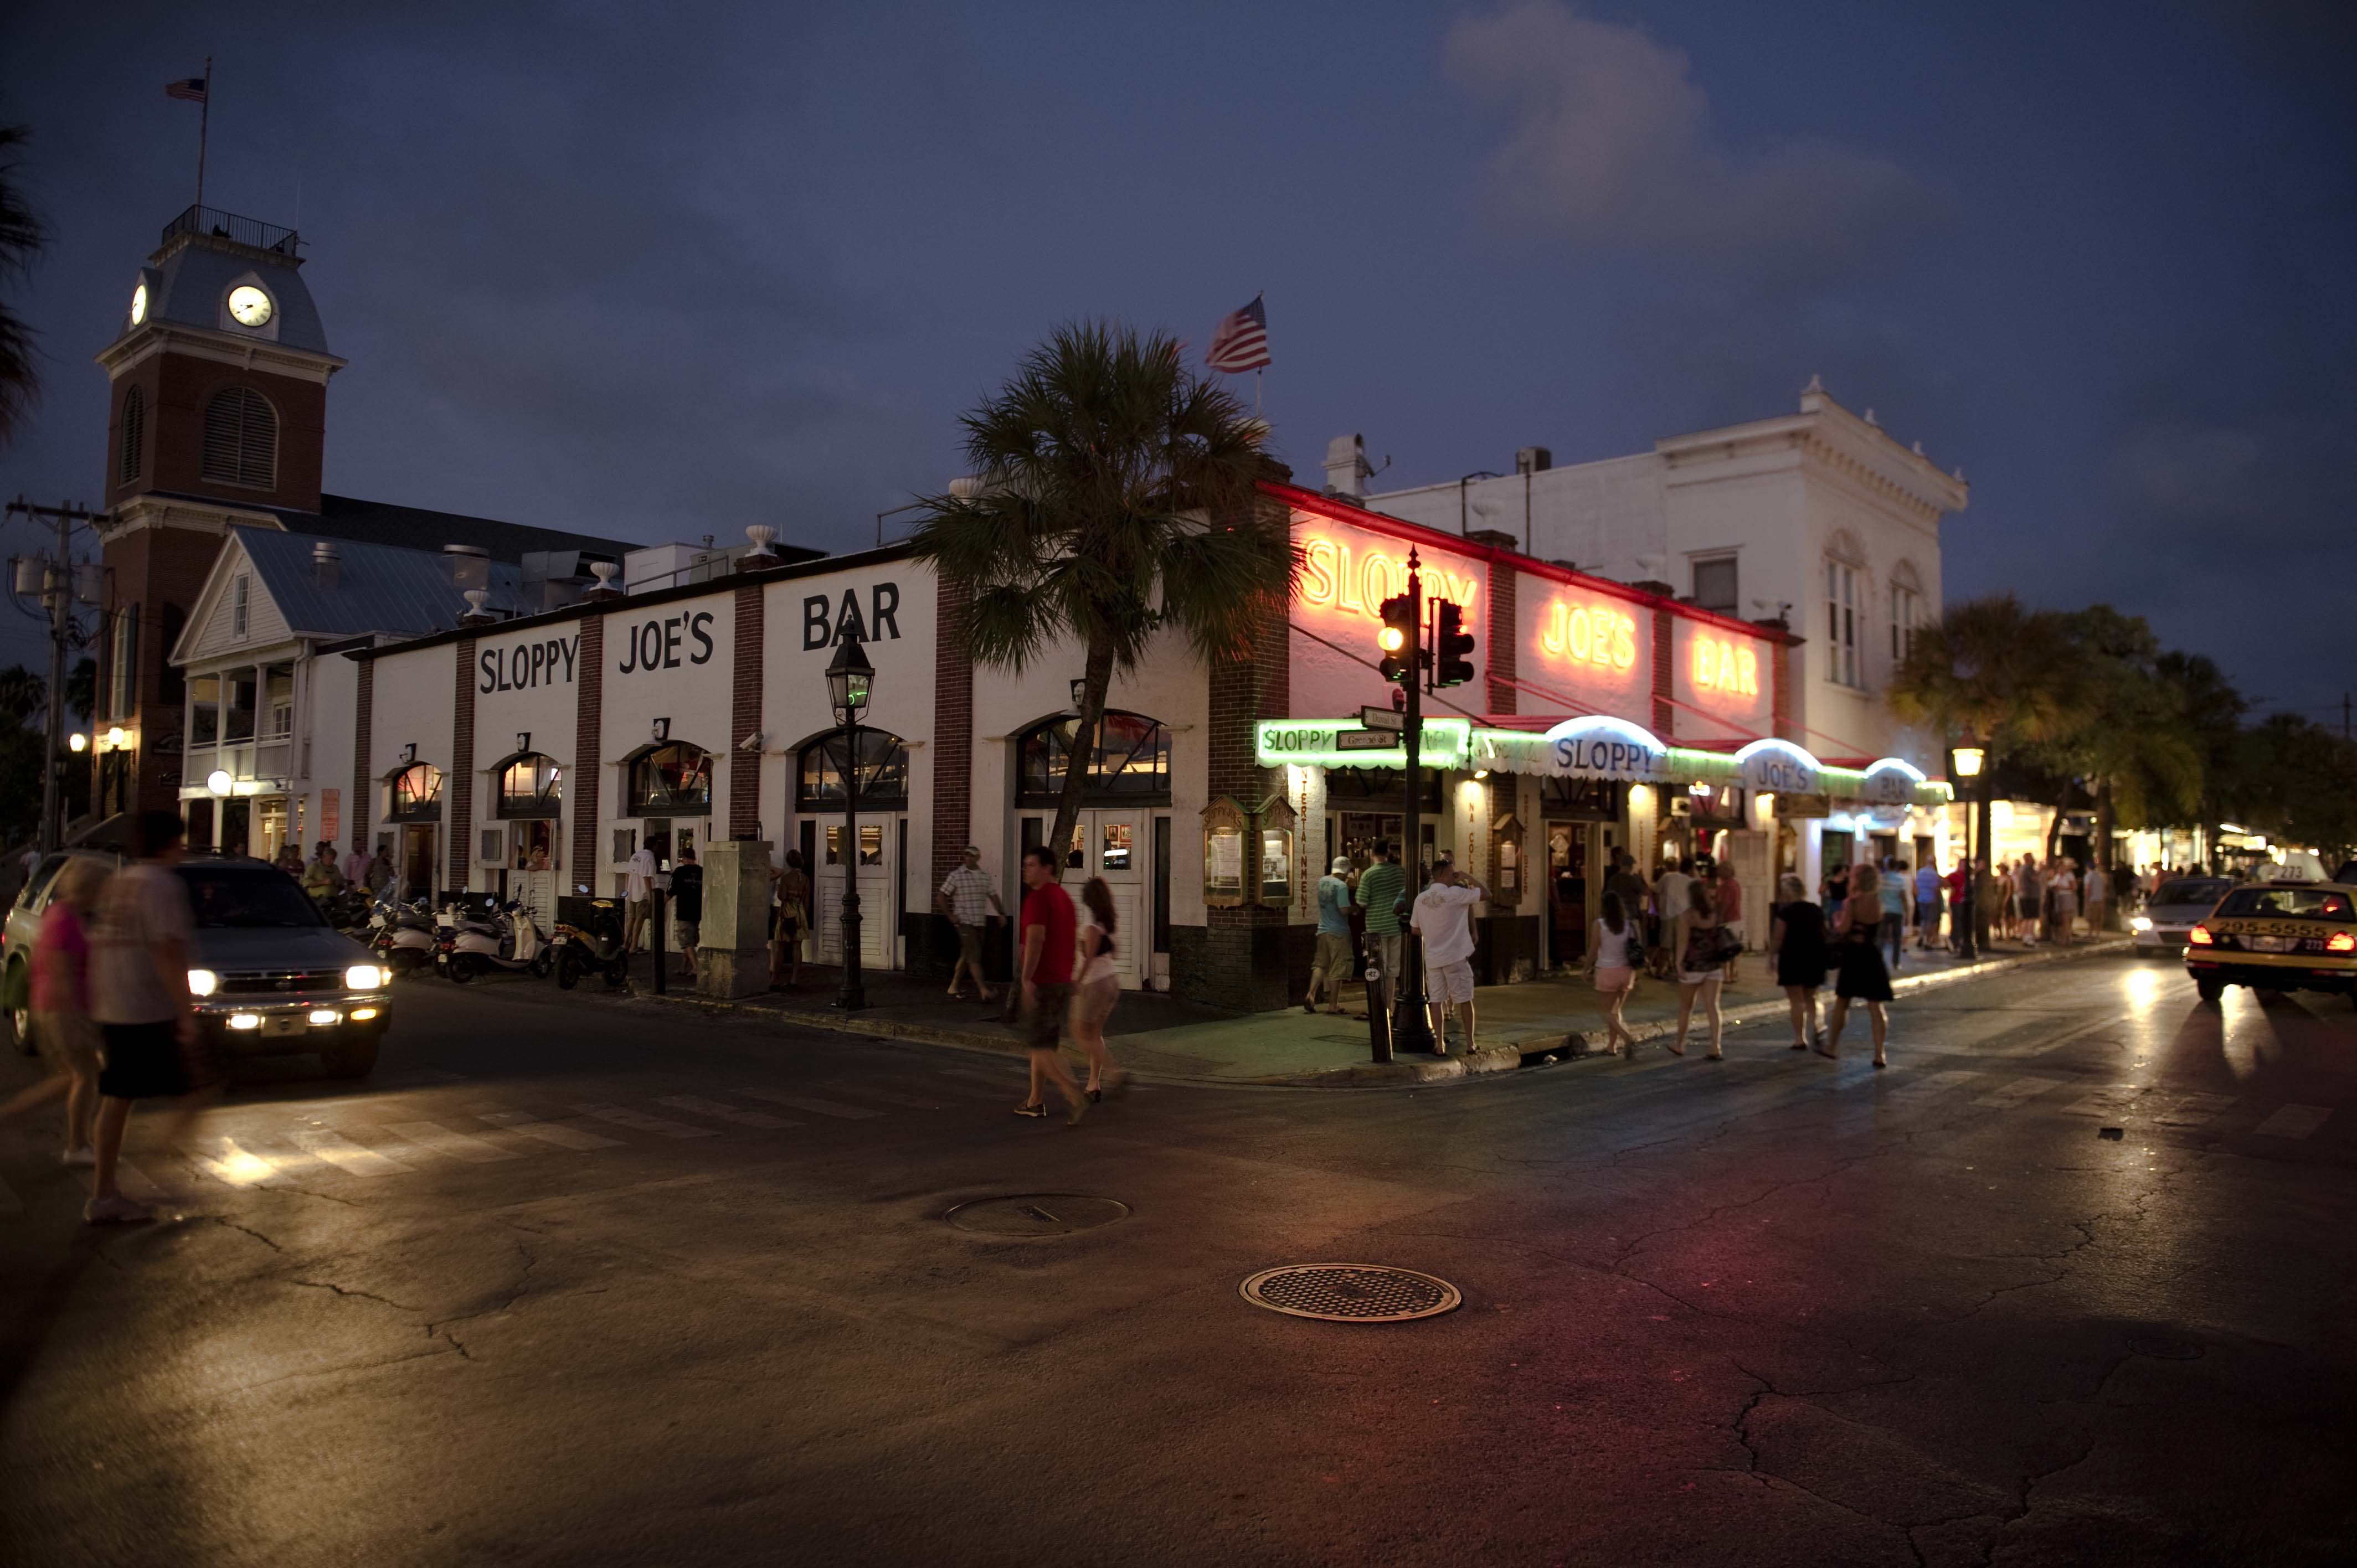 Sloppy Joe's Bar Key West, Florida